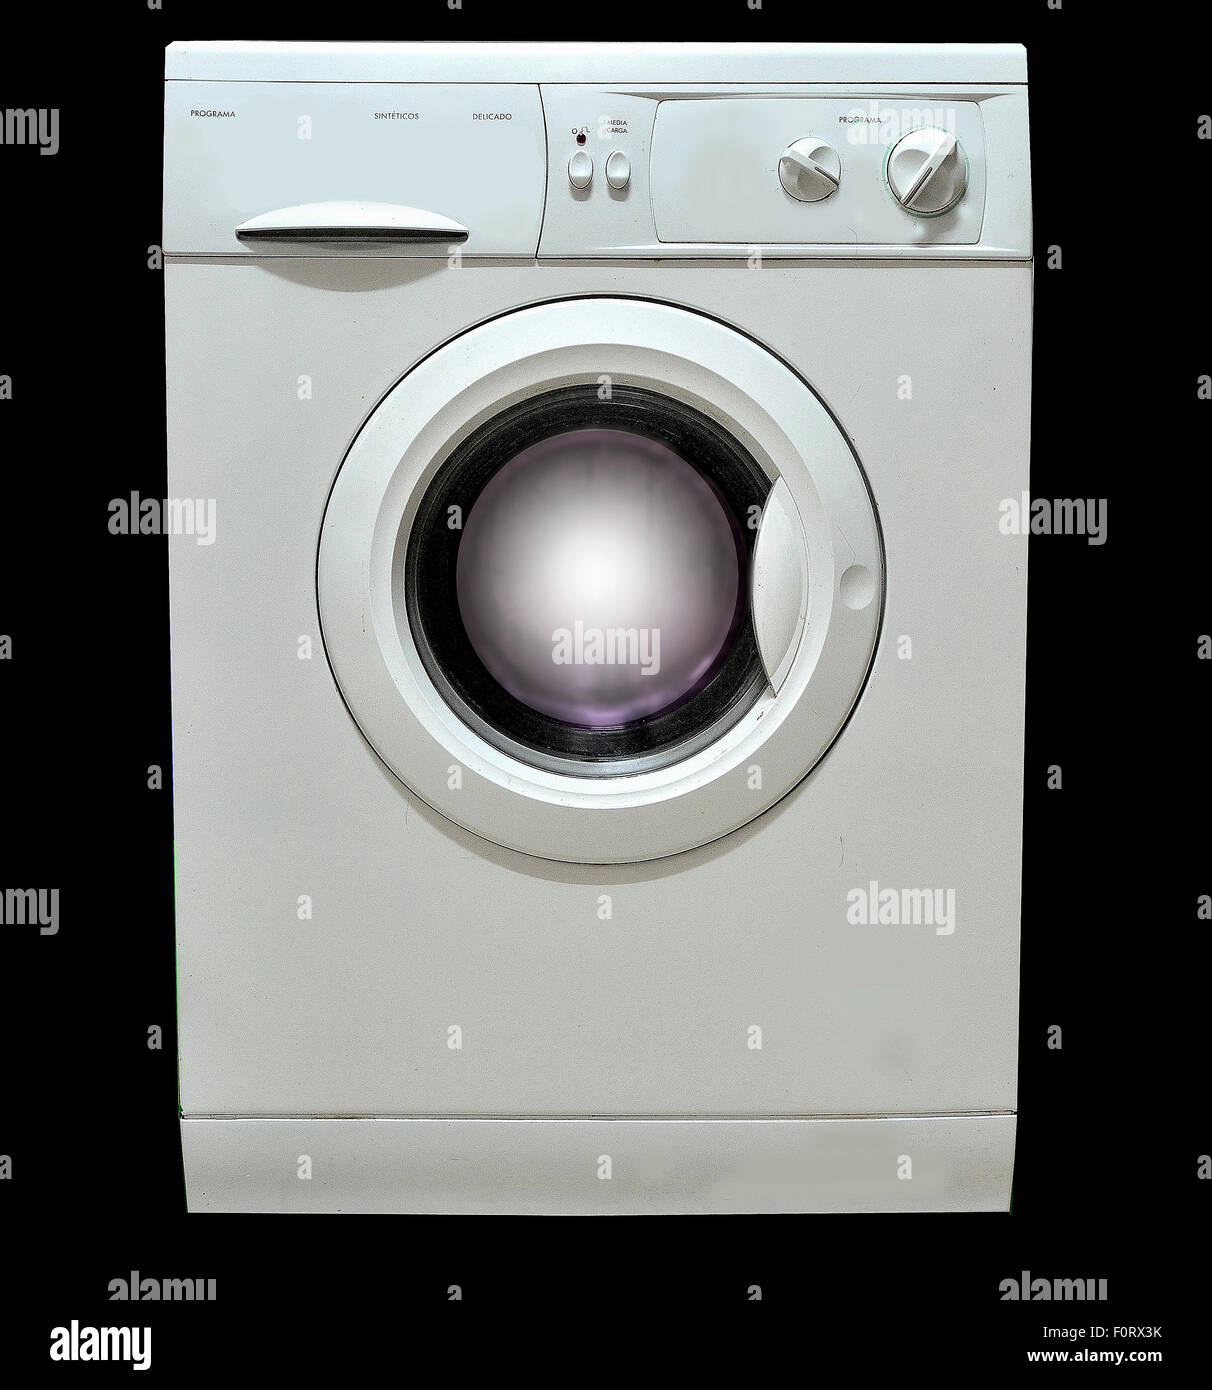 Waschmaschine auf einem schwarzen Hintergrund. Stockfoto